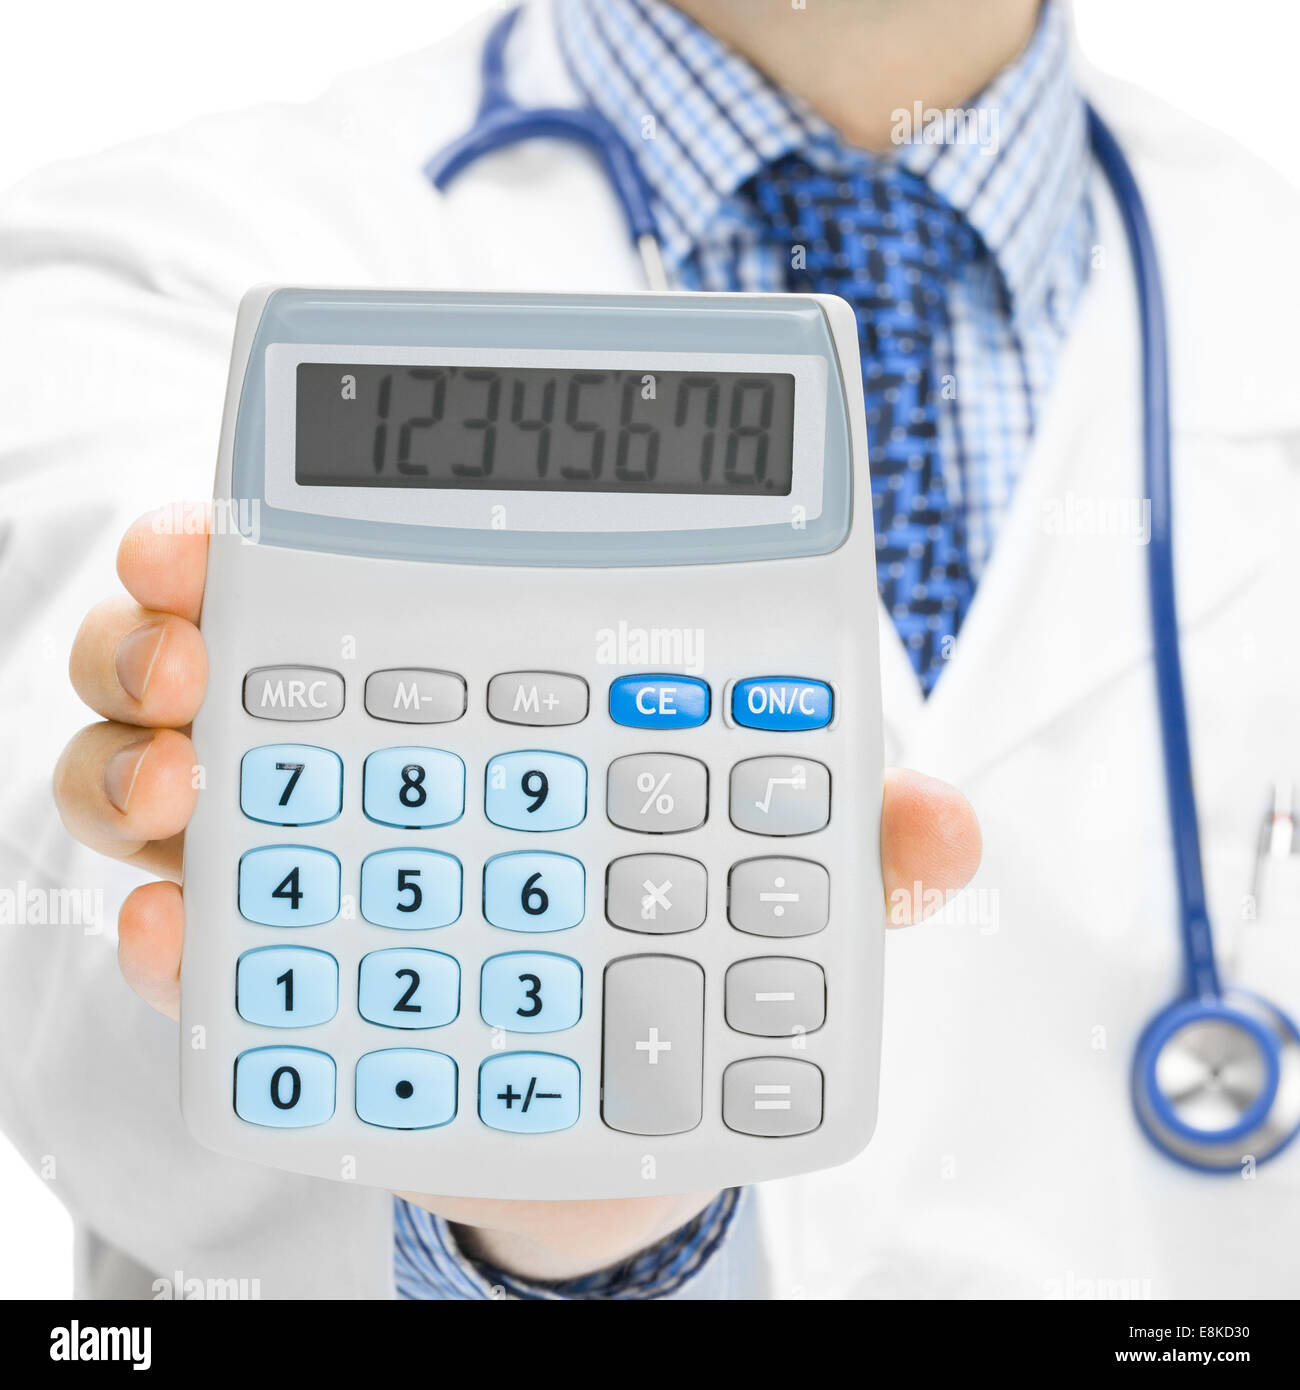 medical calculators